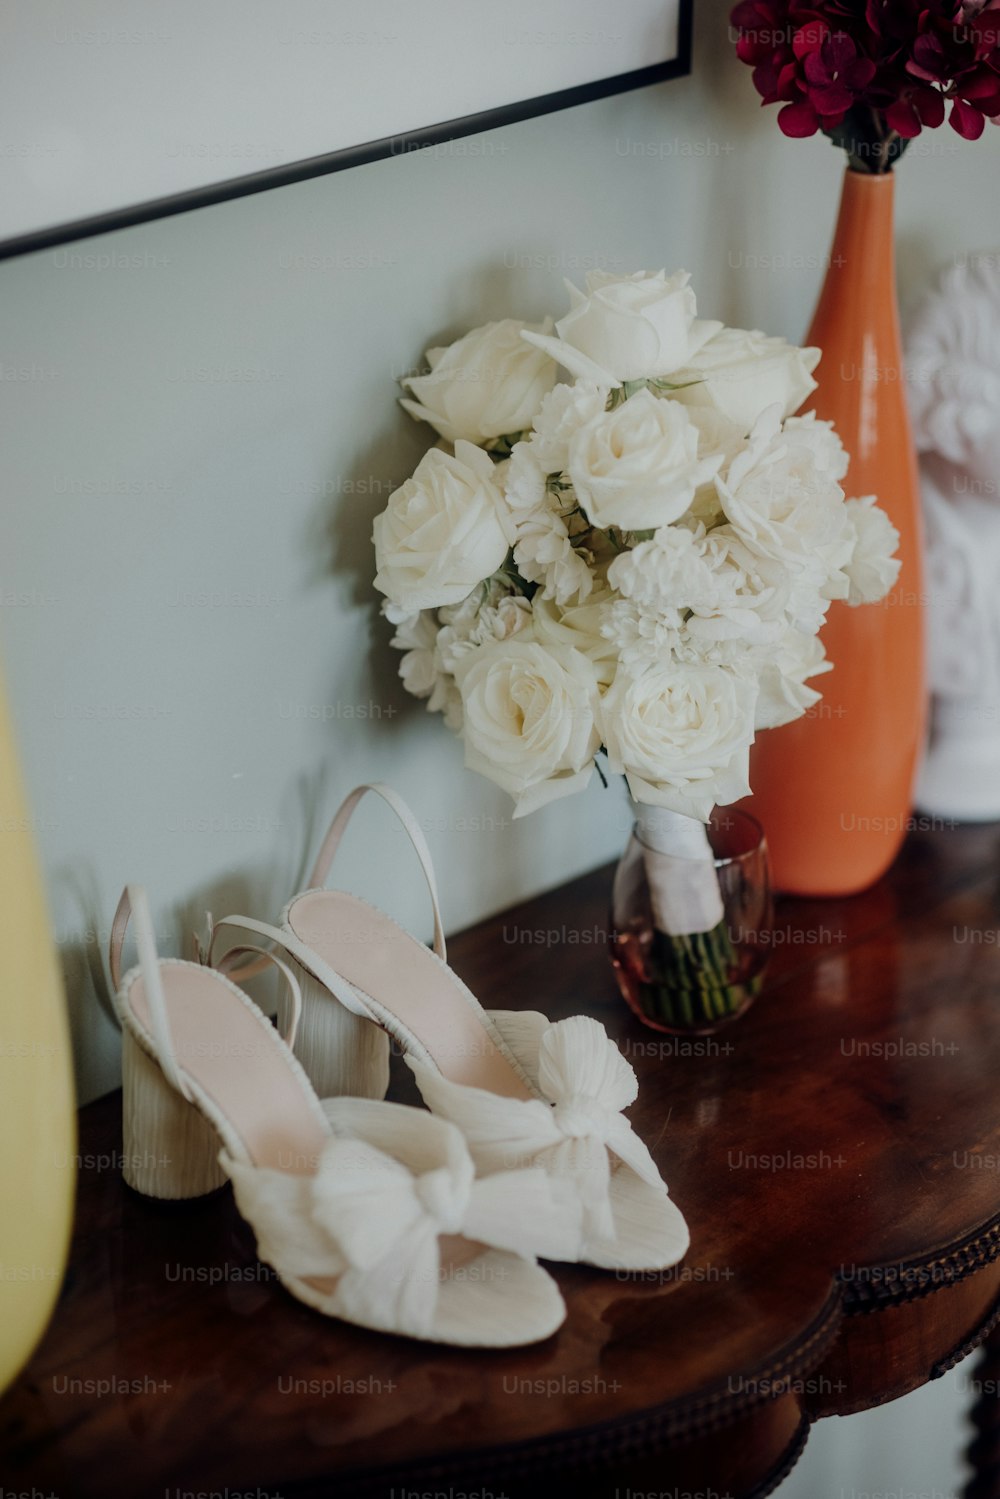 une paire de chaussures blanches assises sur une table à côté d’un vase de fleurs